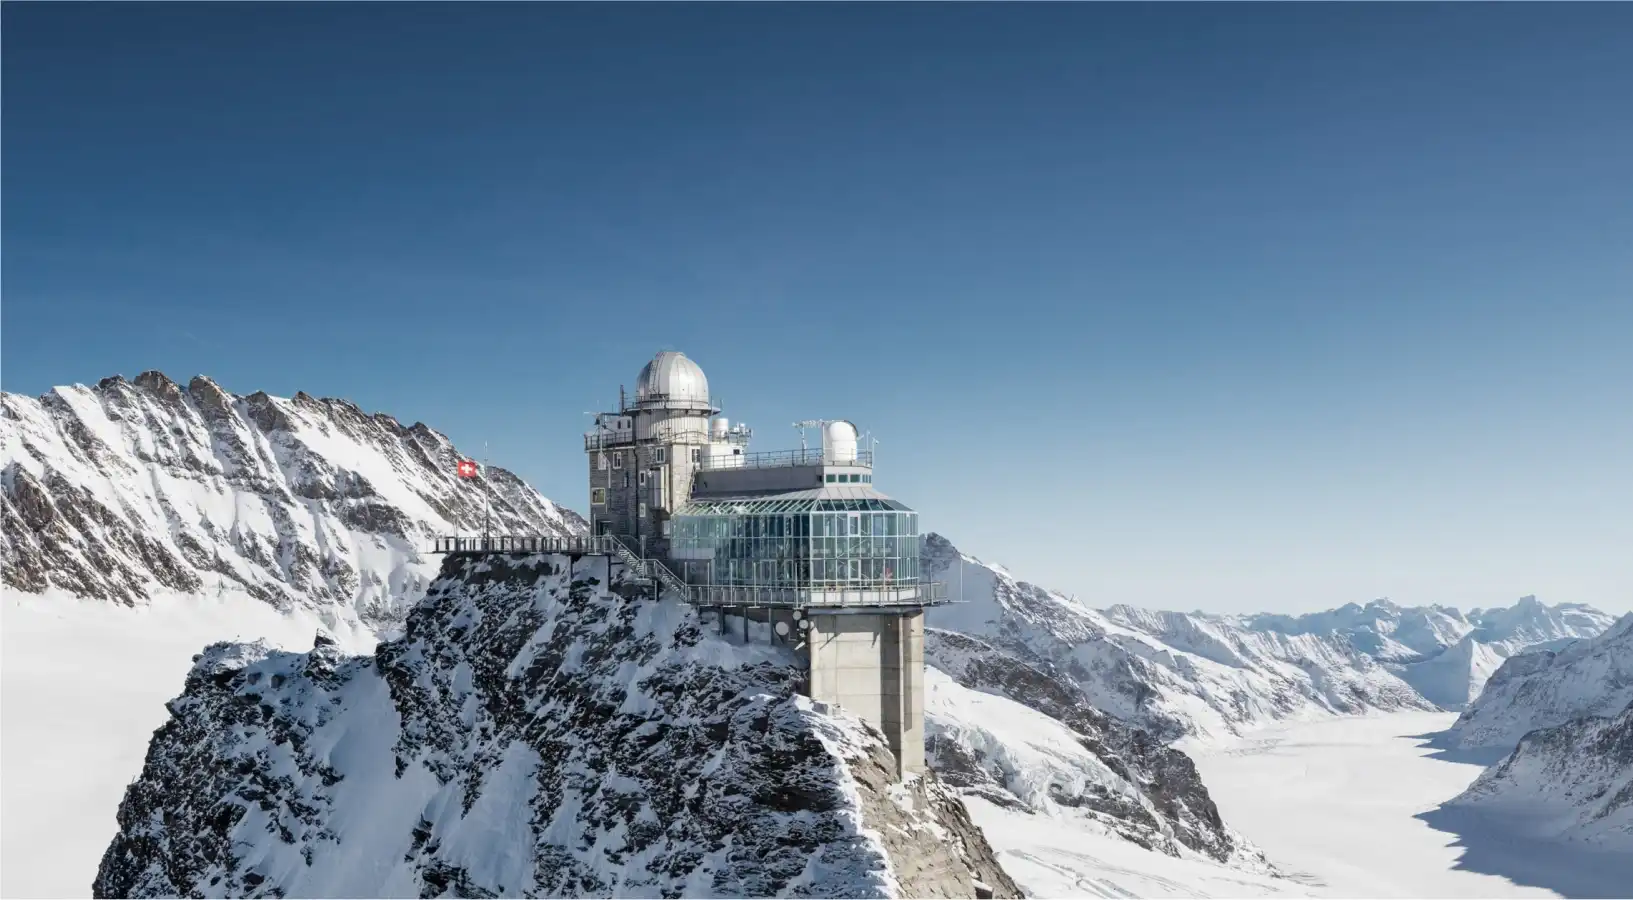 Visit Jungfraujoch on Switzerland travel with swiss pass